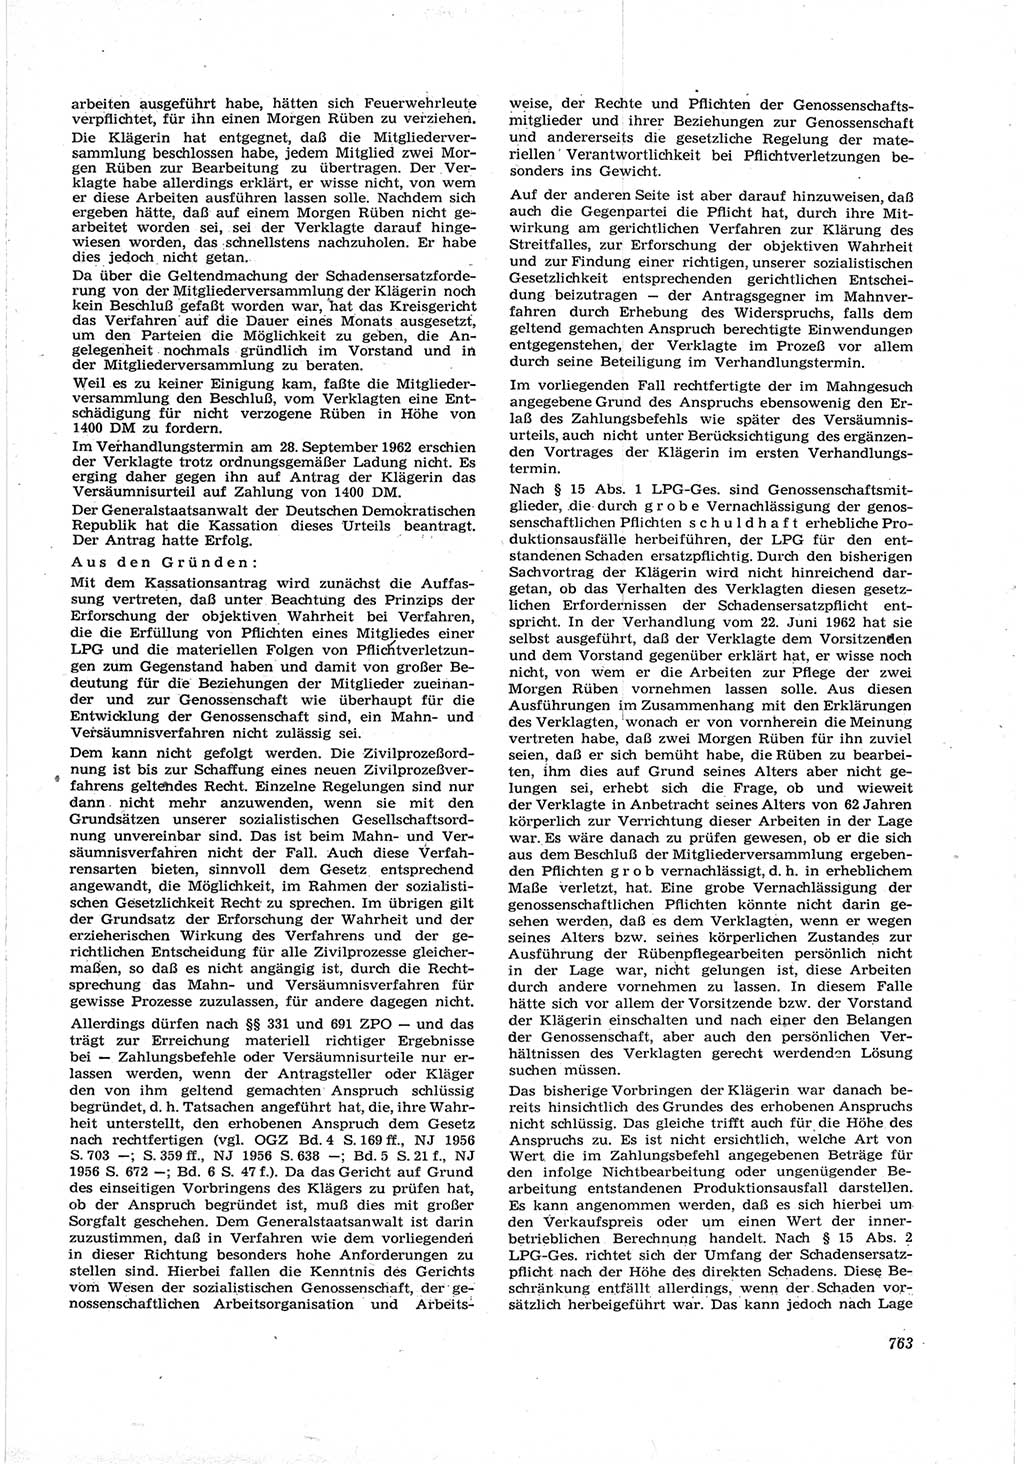 Neue Justiz (NJ), Zeitschrift für Recht und Rechtswissenschaft [Deutsche Demokratische Republik (DDR)], 17. Jahrgang 1963, Seite 763 (NJ DDR 1963, S. 763)